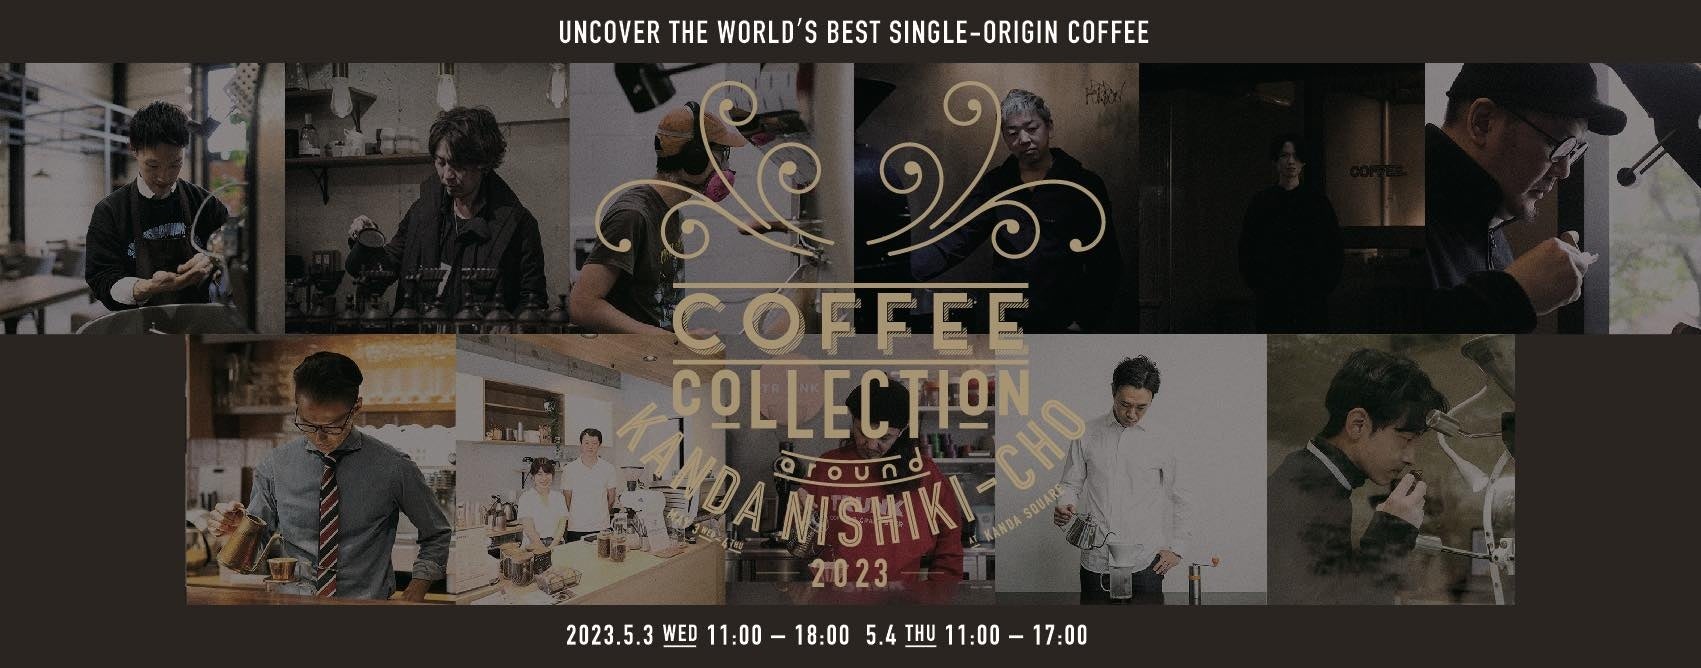 喫茶店の街、神田錦町で世界トップクラスのコーヒーを「COFFEE COLLECTION 2023」